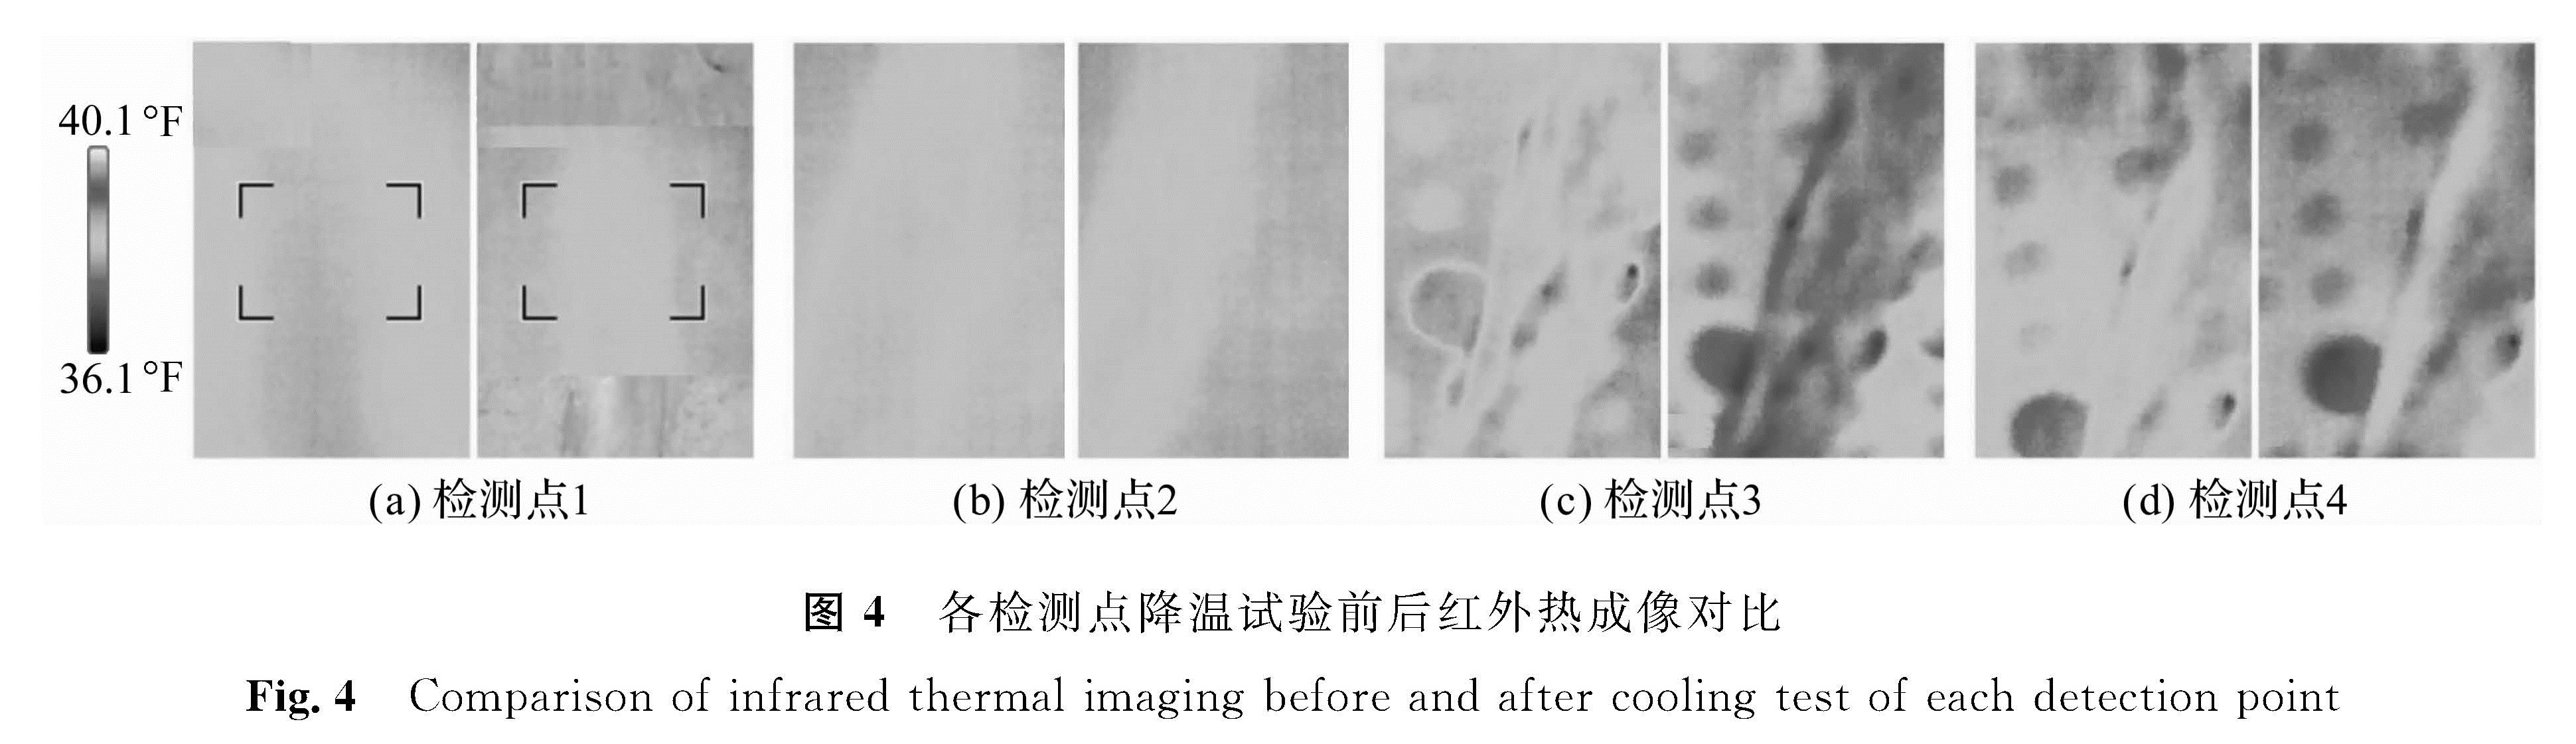 图4 各检测点降温试验前后红外热成像对比<br/>Fig.4 Comparison of infrared thermal imaging before and after cooling test of each detection point